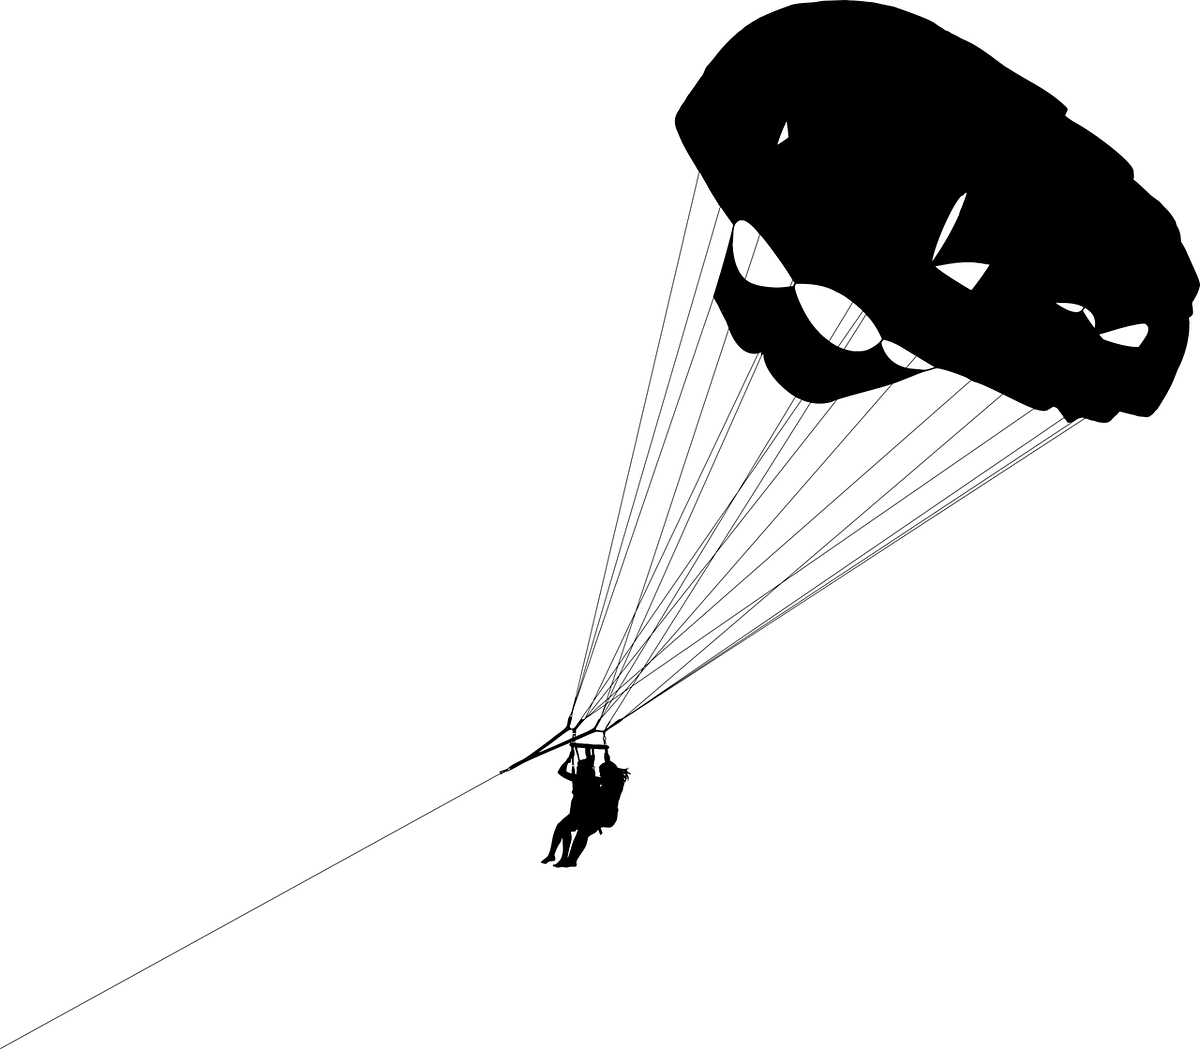 Navy officer dies in paraglider crash at Karwar